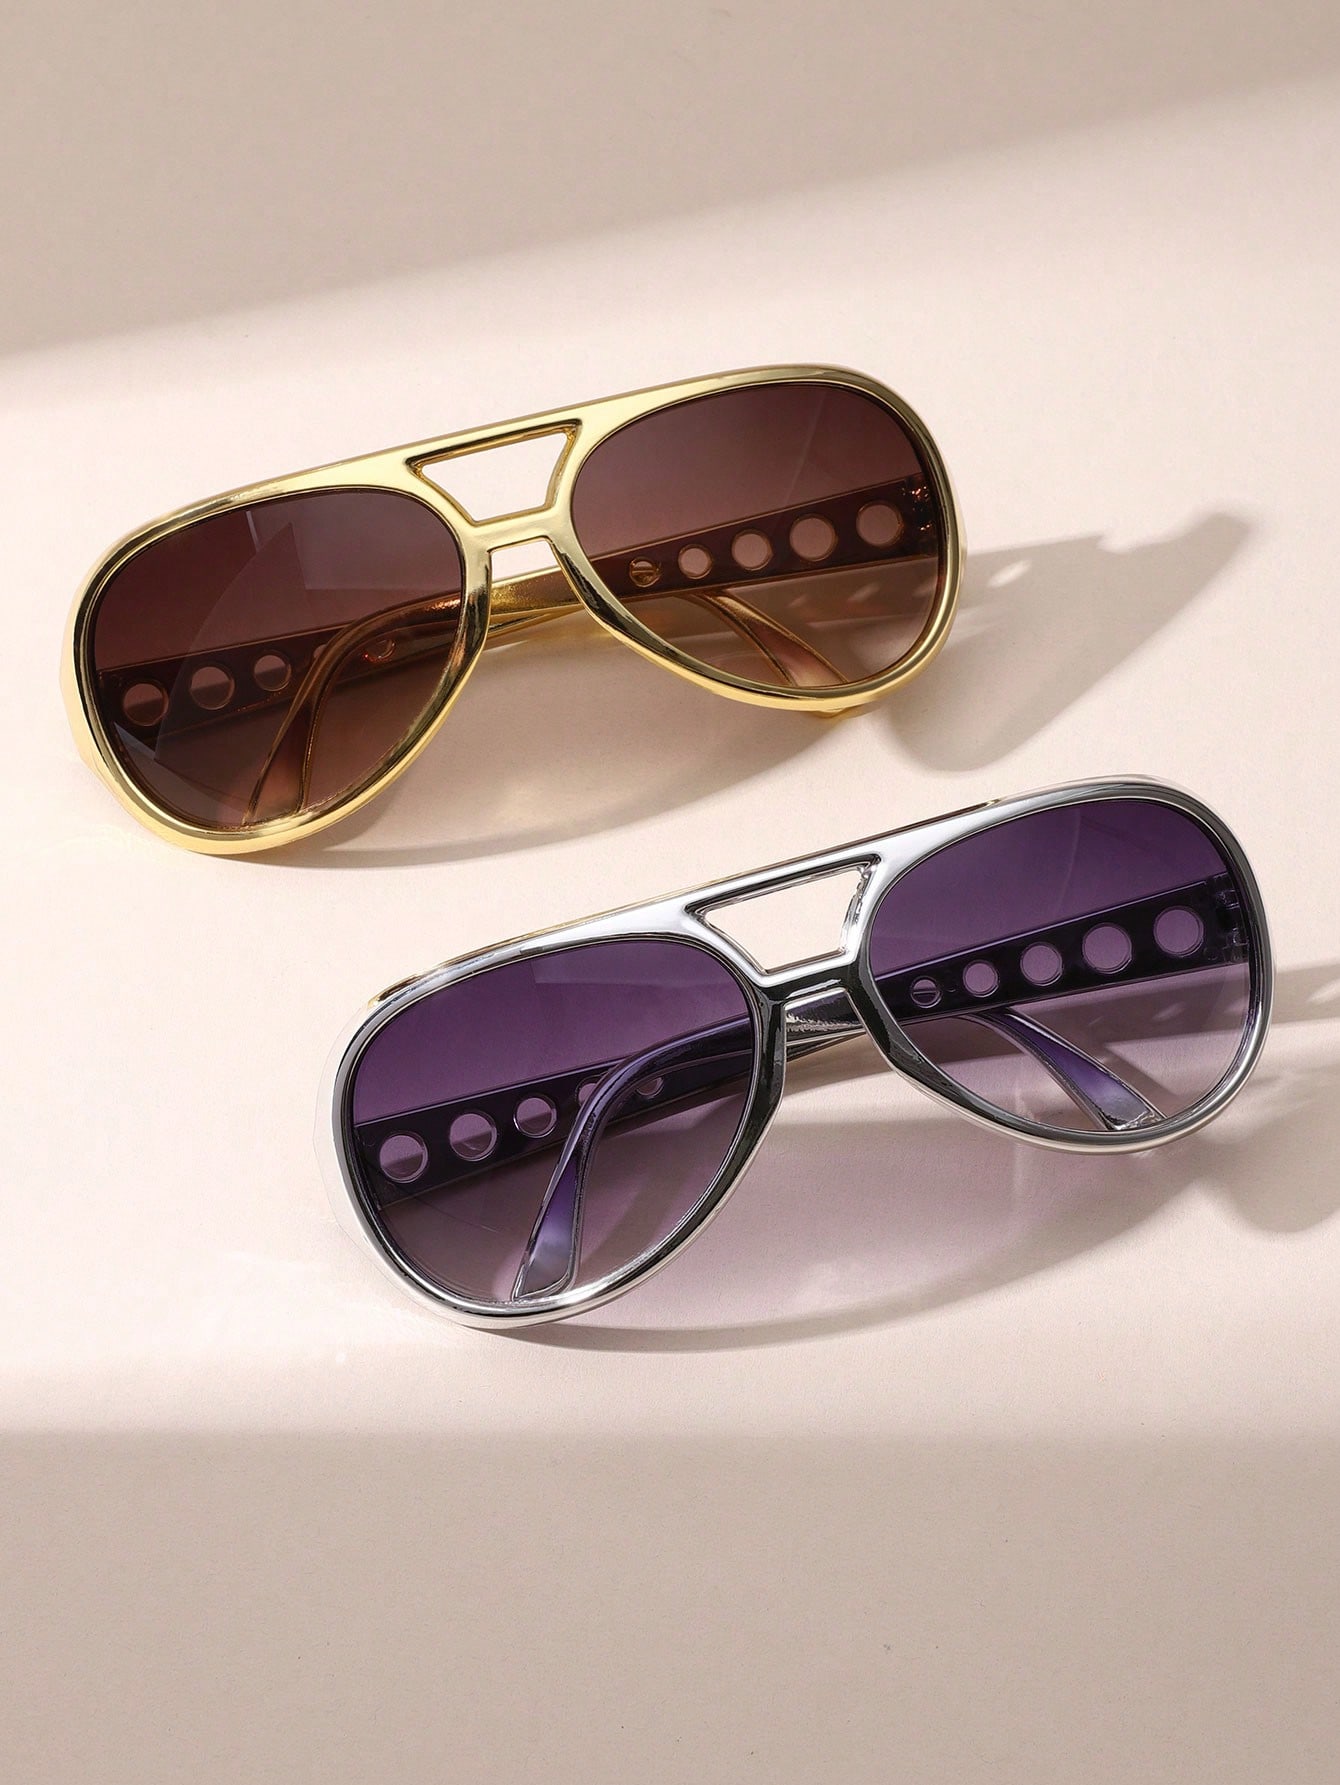 1 шт. новые креативные модные высококачественные солнцезащитные очки